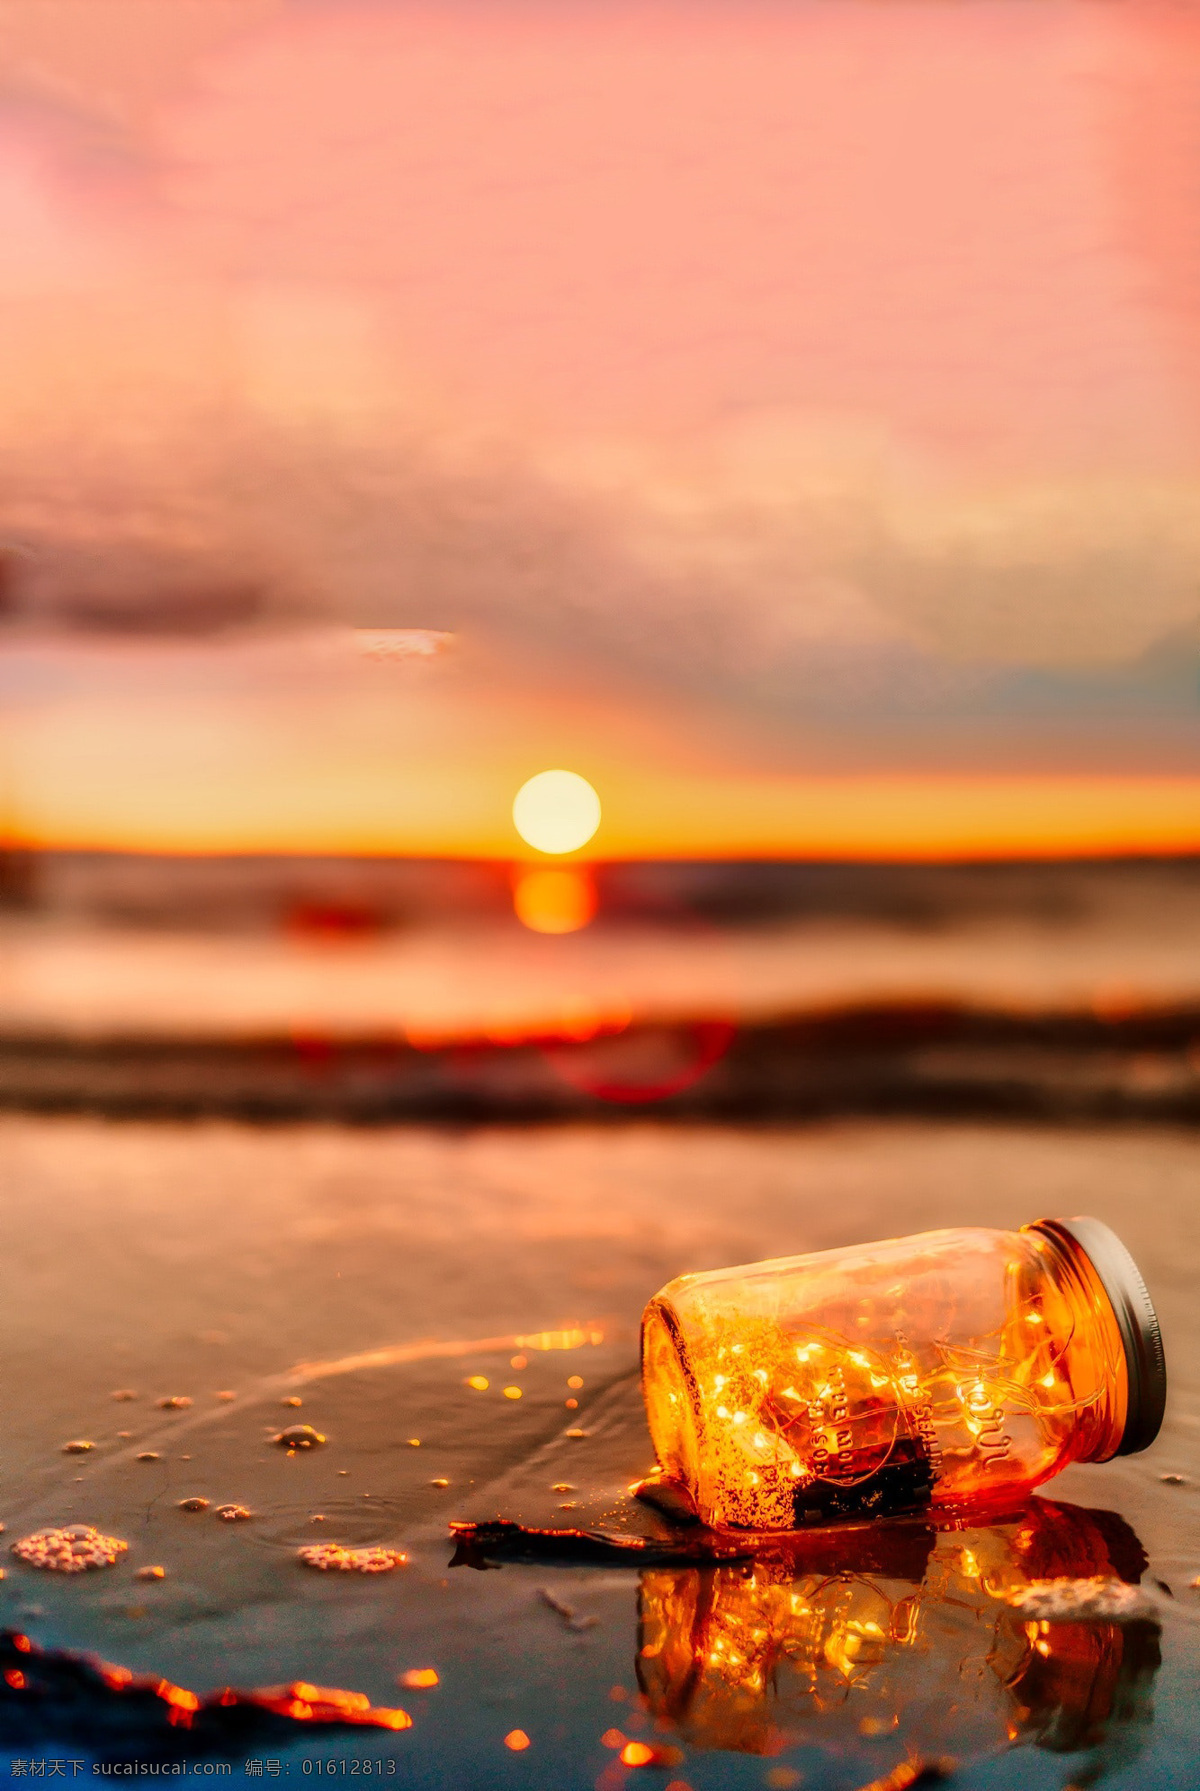 夕阳 海边 漂流 瓶 漂流瓶 橙色 夜色 晚霞 朦胧 自然景观 自然风景